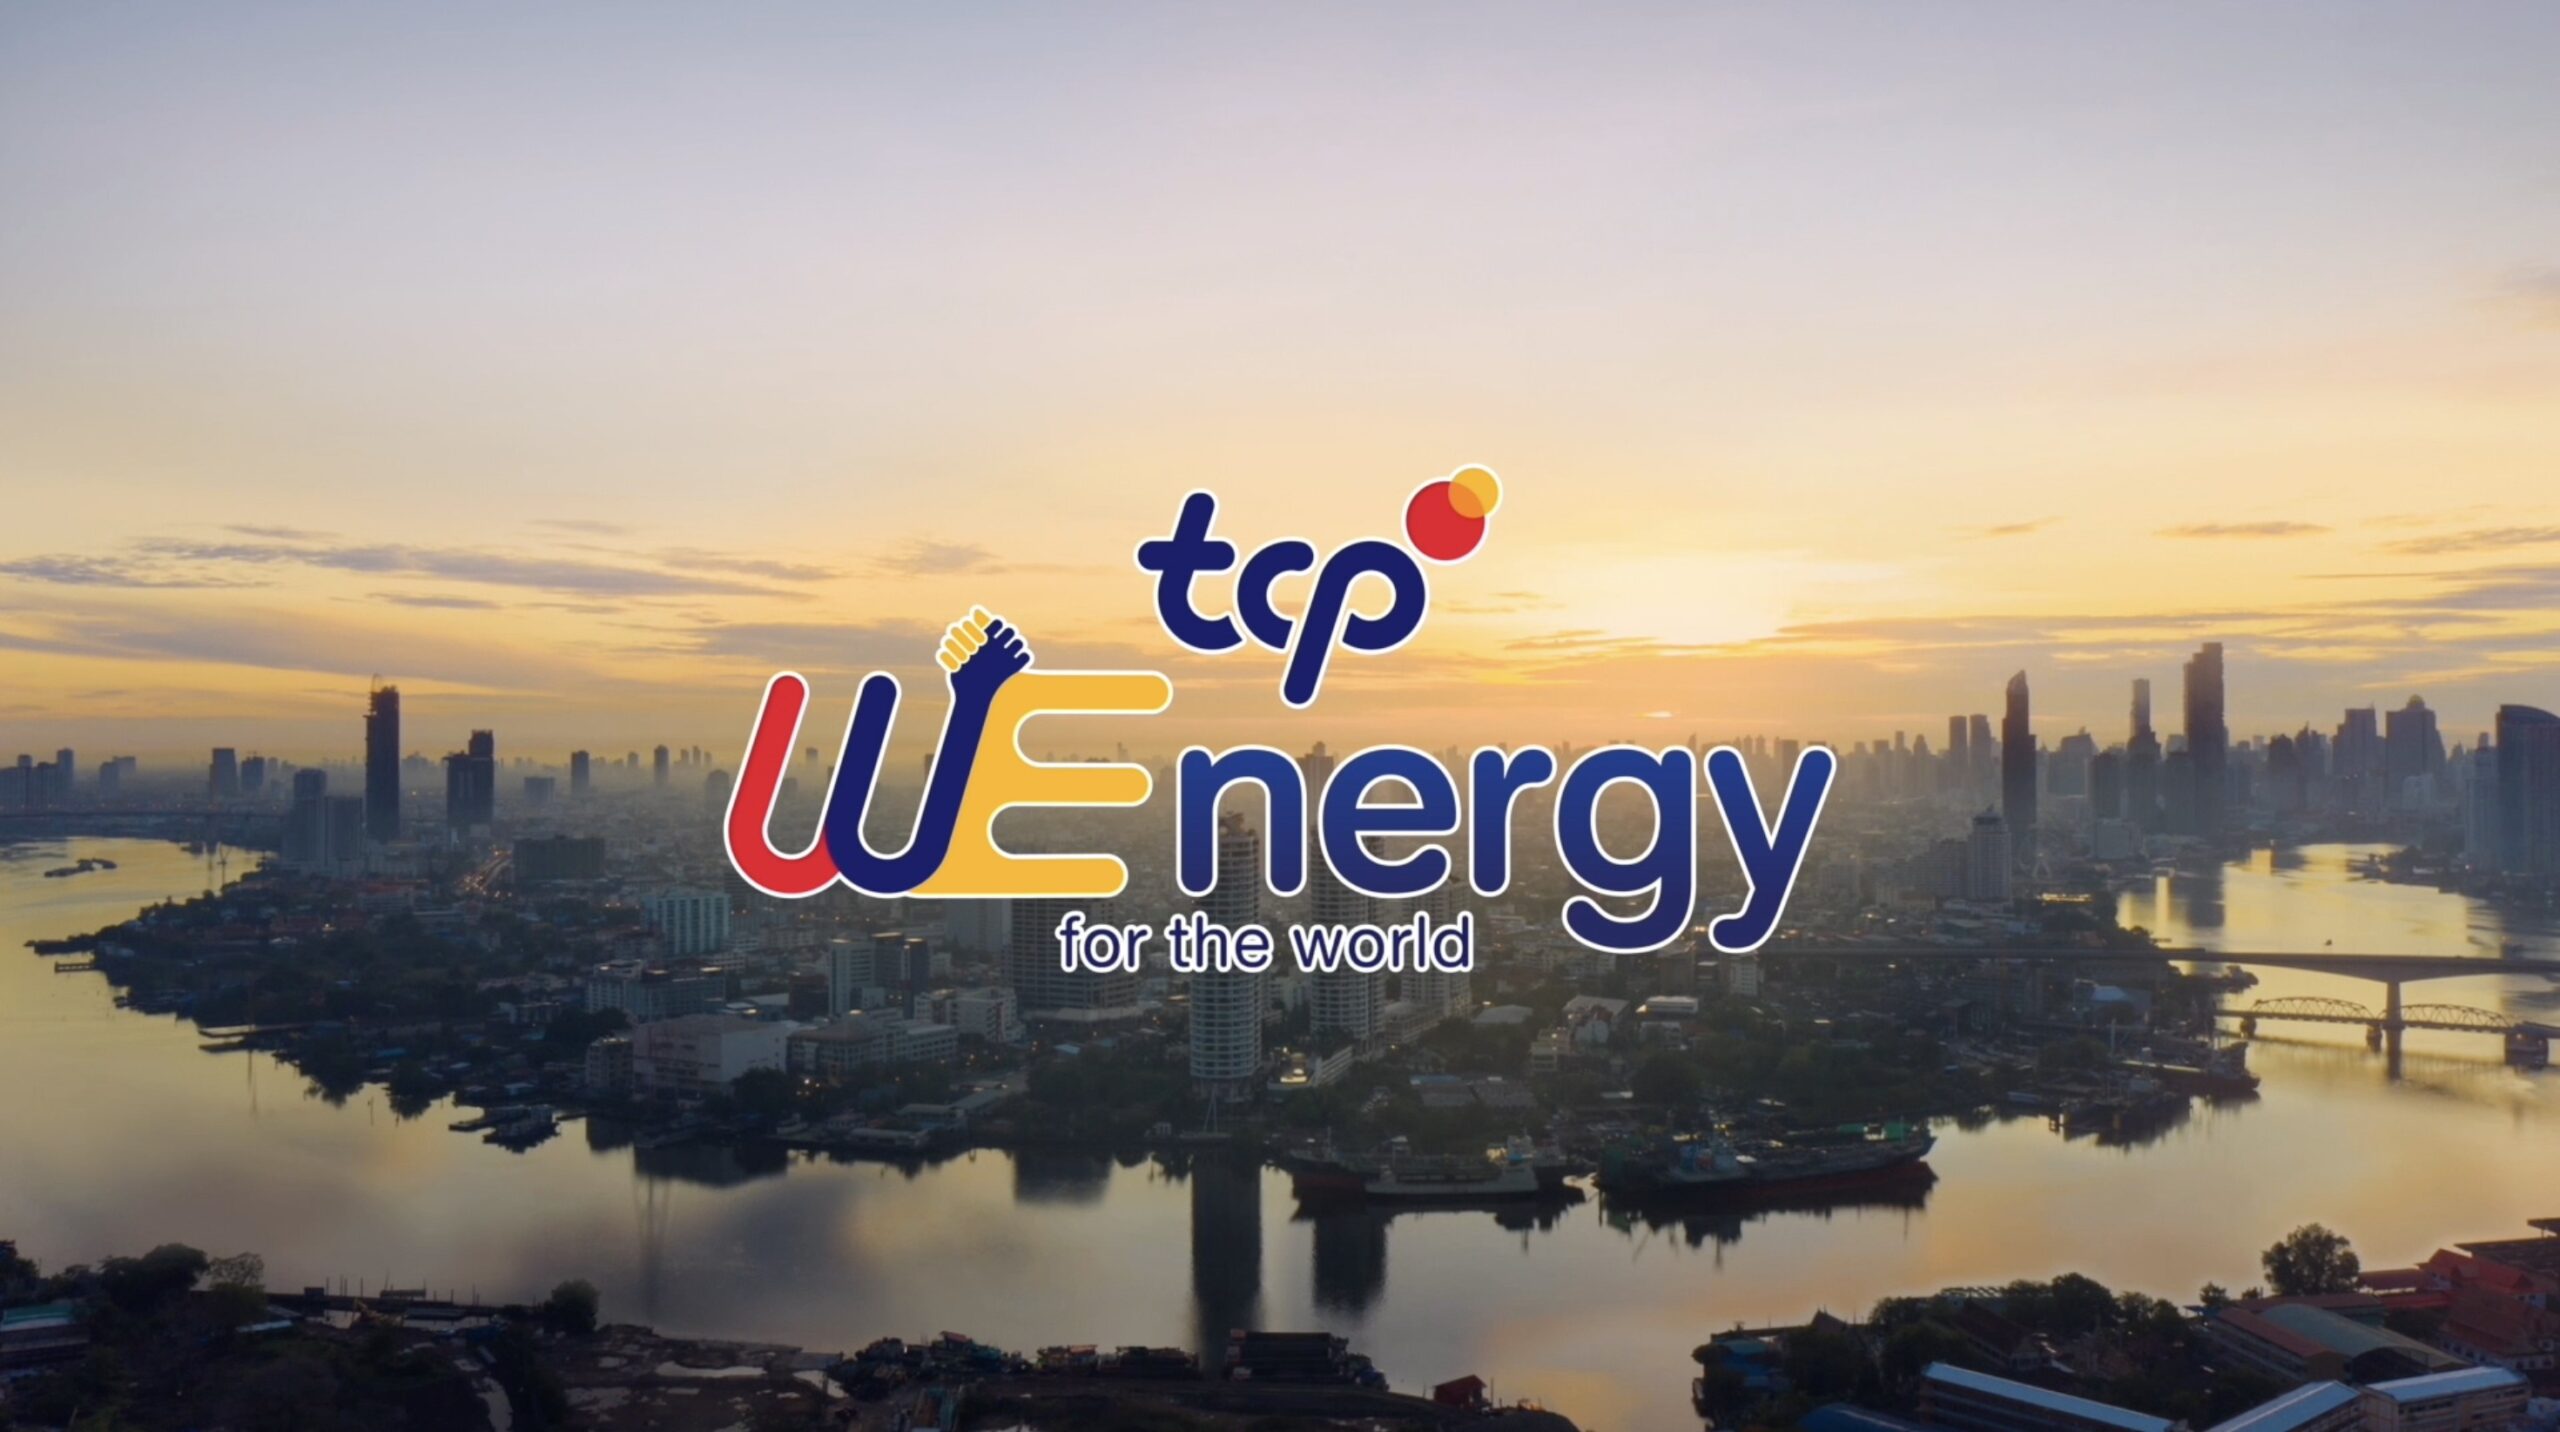 กลุ่ม TCP เปิดตัว ‘TCP WEnergy for the world’พลังเรารวมกัน คืนพลังให้โลก